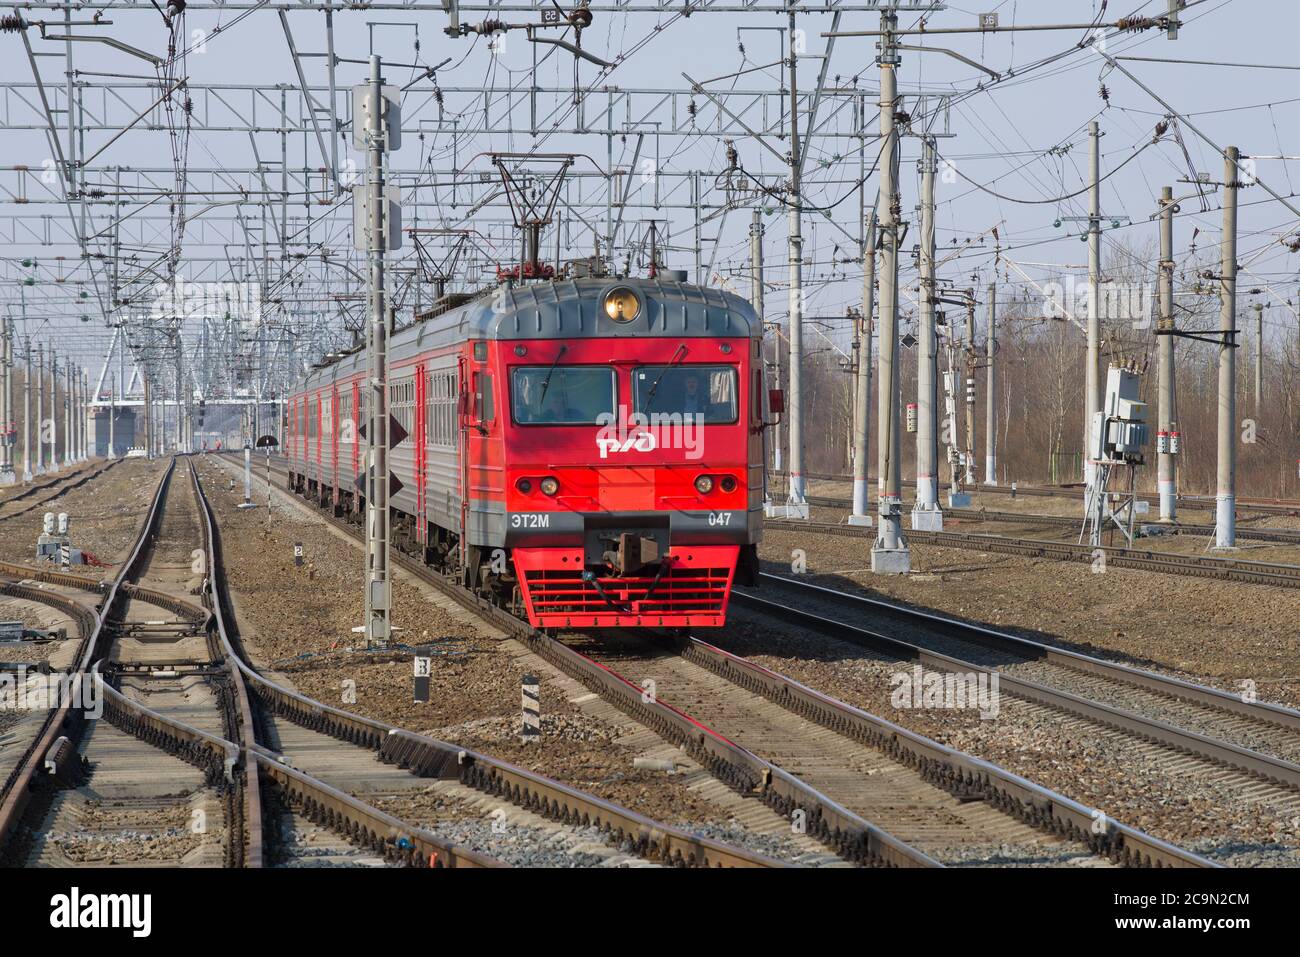 RÉGION DE LENINGRAD, RUSSIE - 09 AVRIL 2018 : train électrique ET2M-047 sur un tronçon de chemin de fer par un beau jour de printemps Banque D'Images